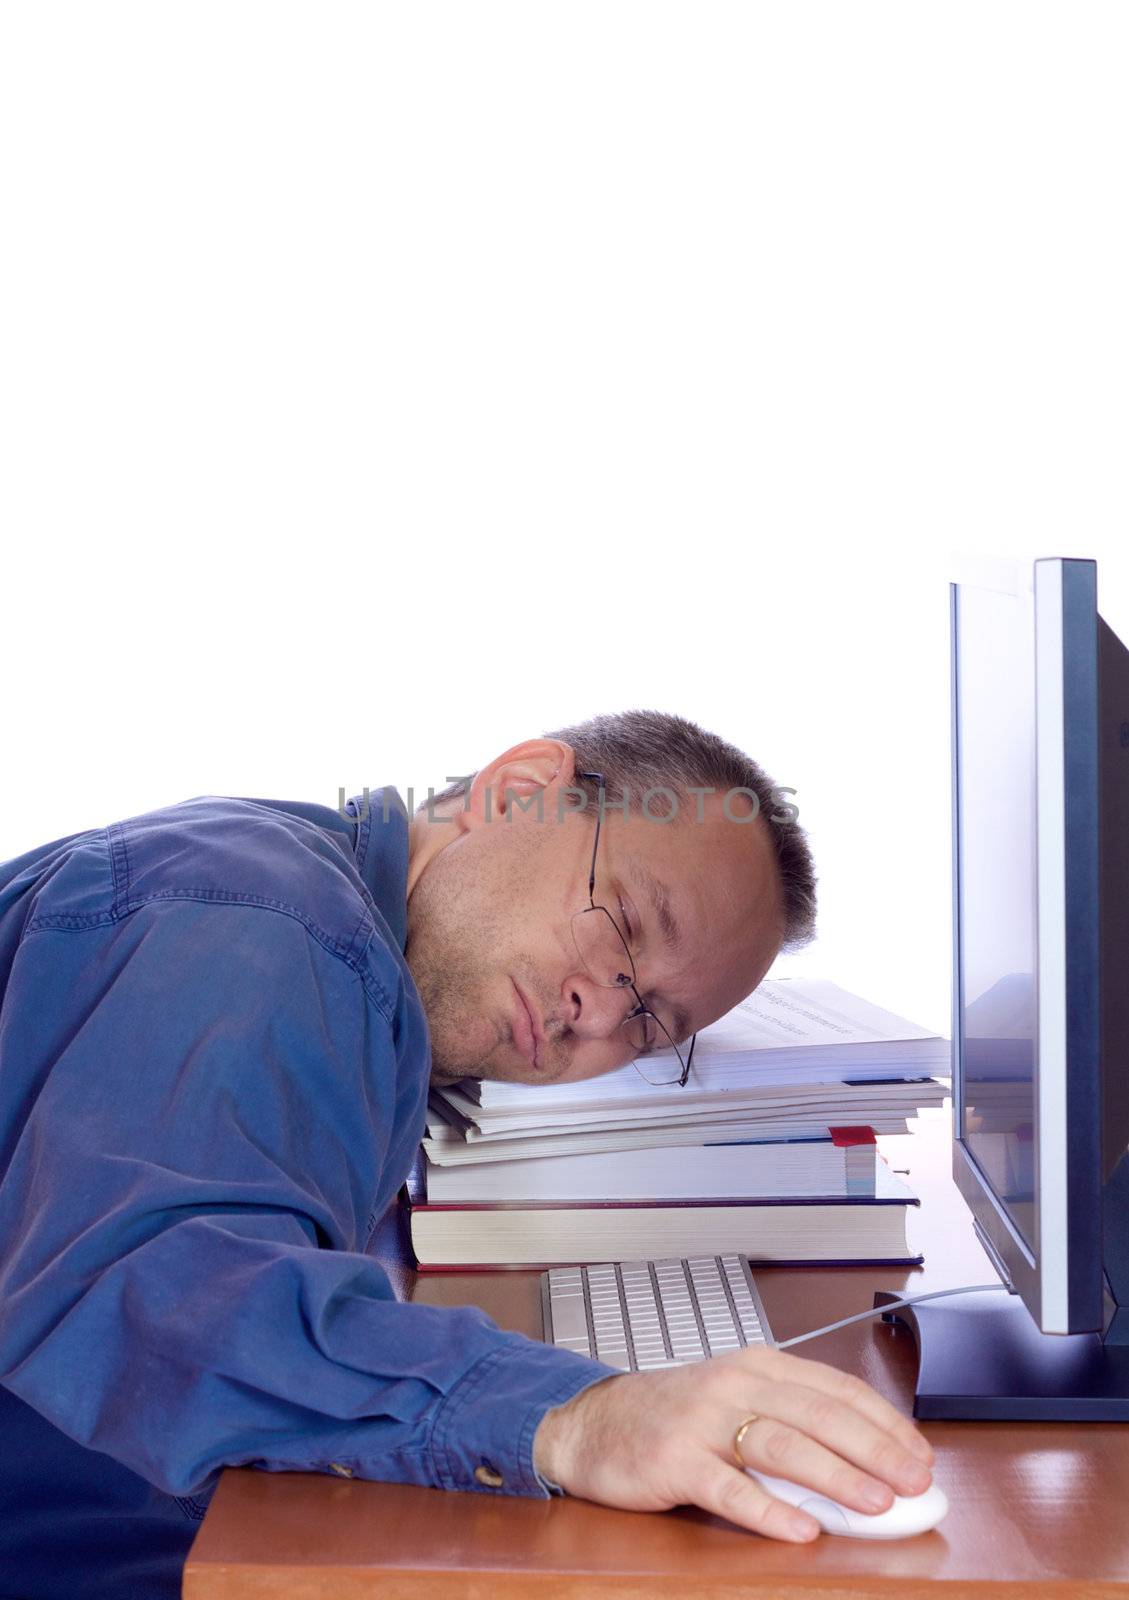 Man asleep on his computer keyboard